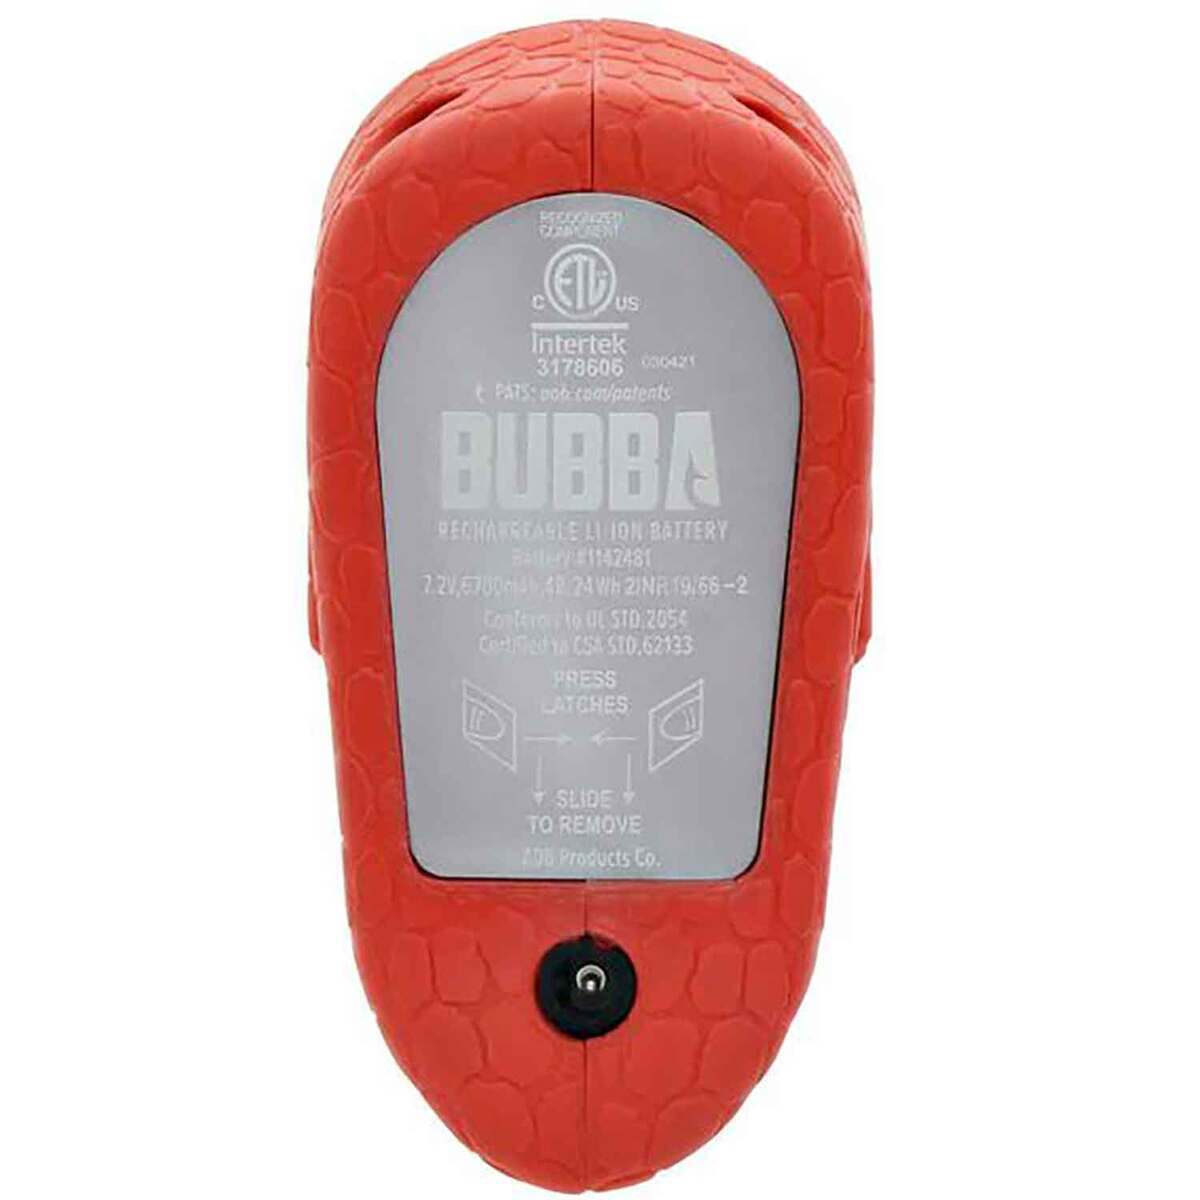 Bubba Magnum Lithium Ion Battery Fillet Accessory - Orange, 6,700 mAH -  Orange